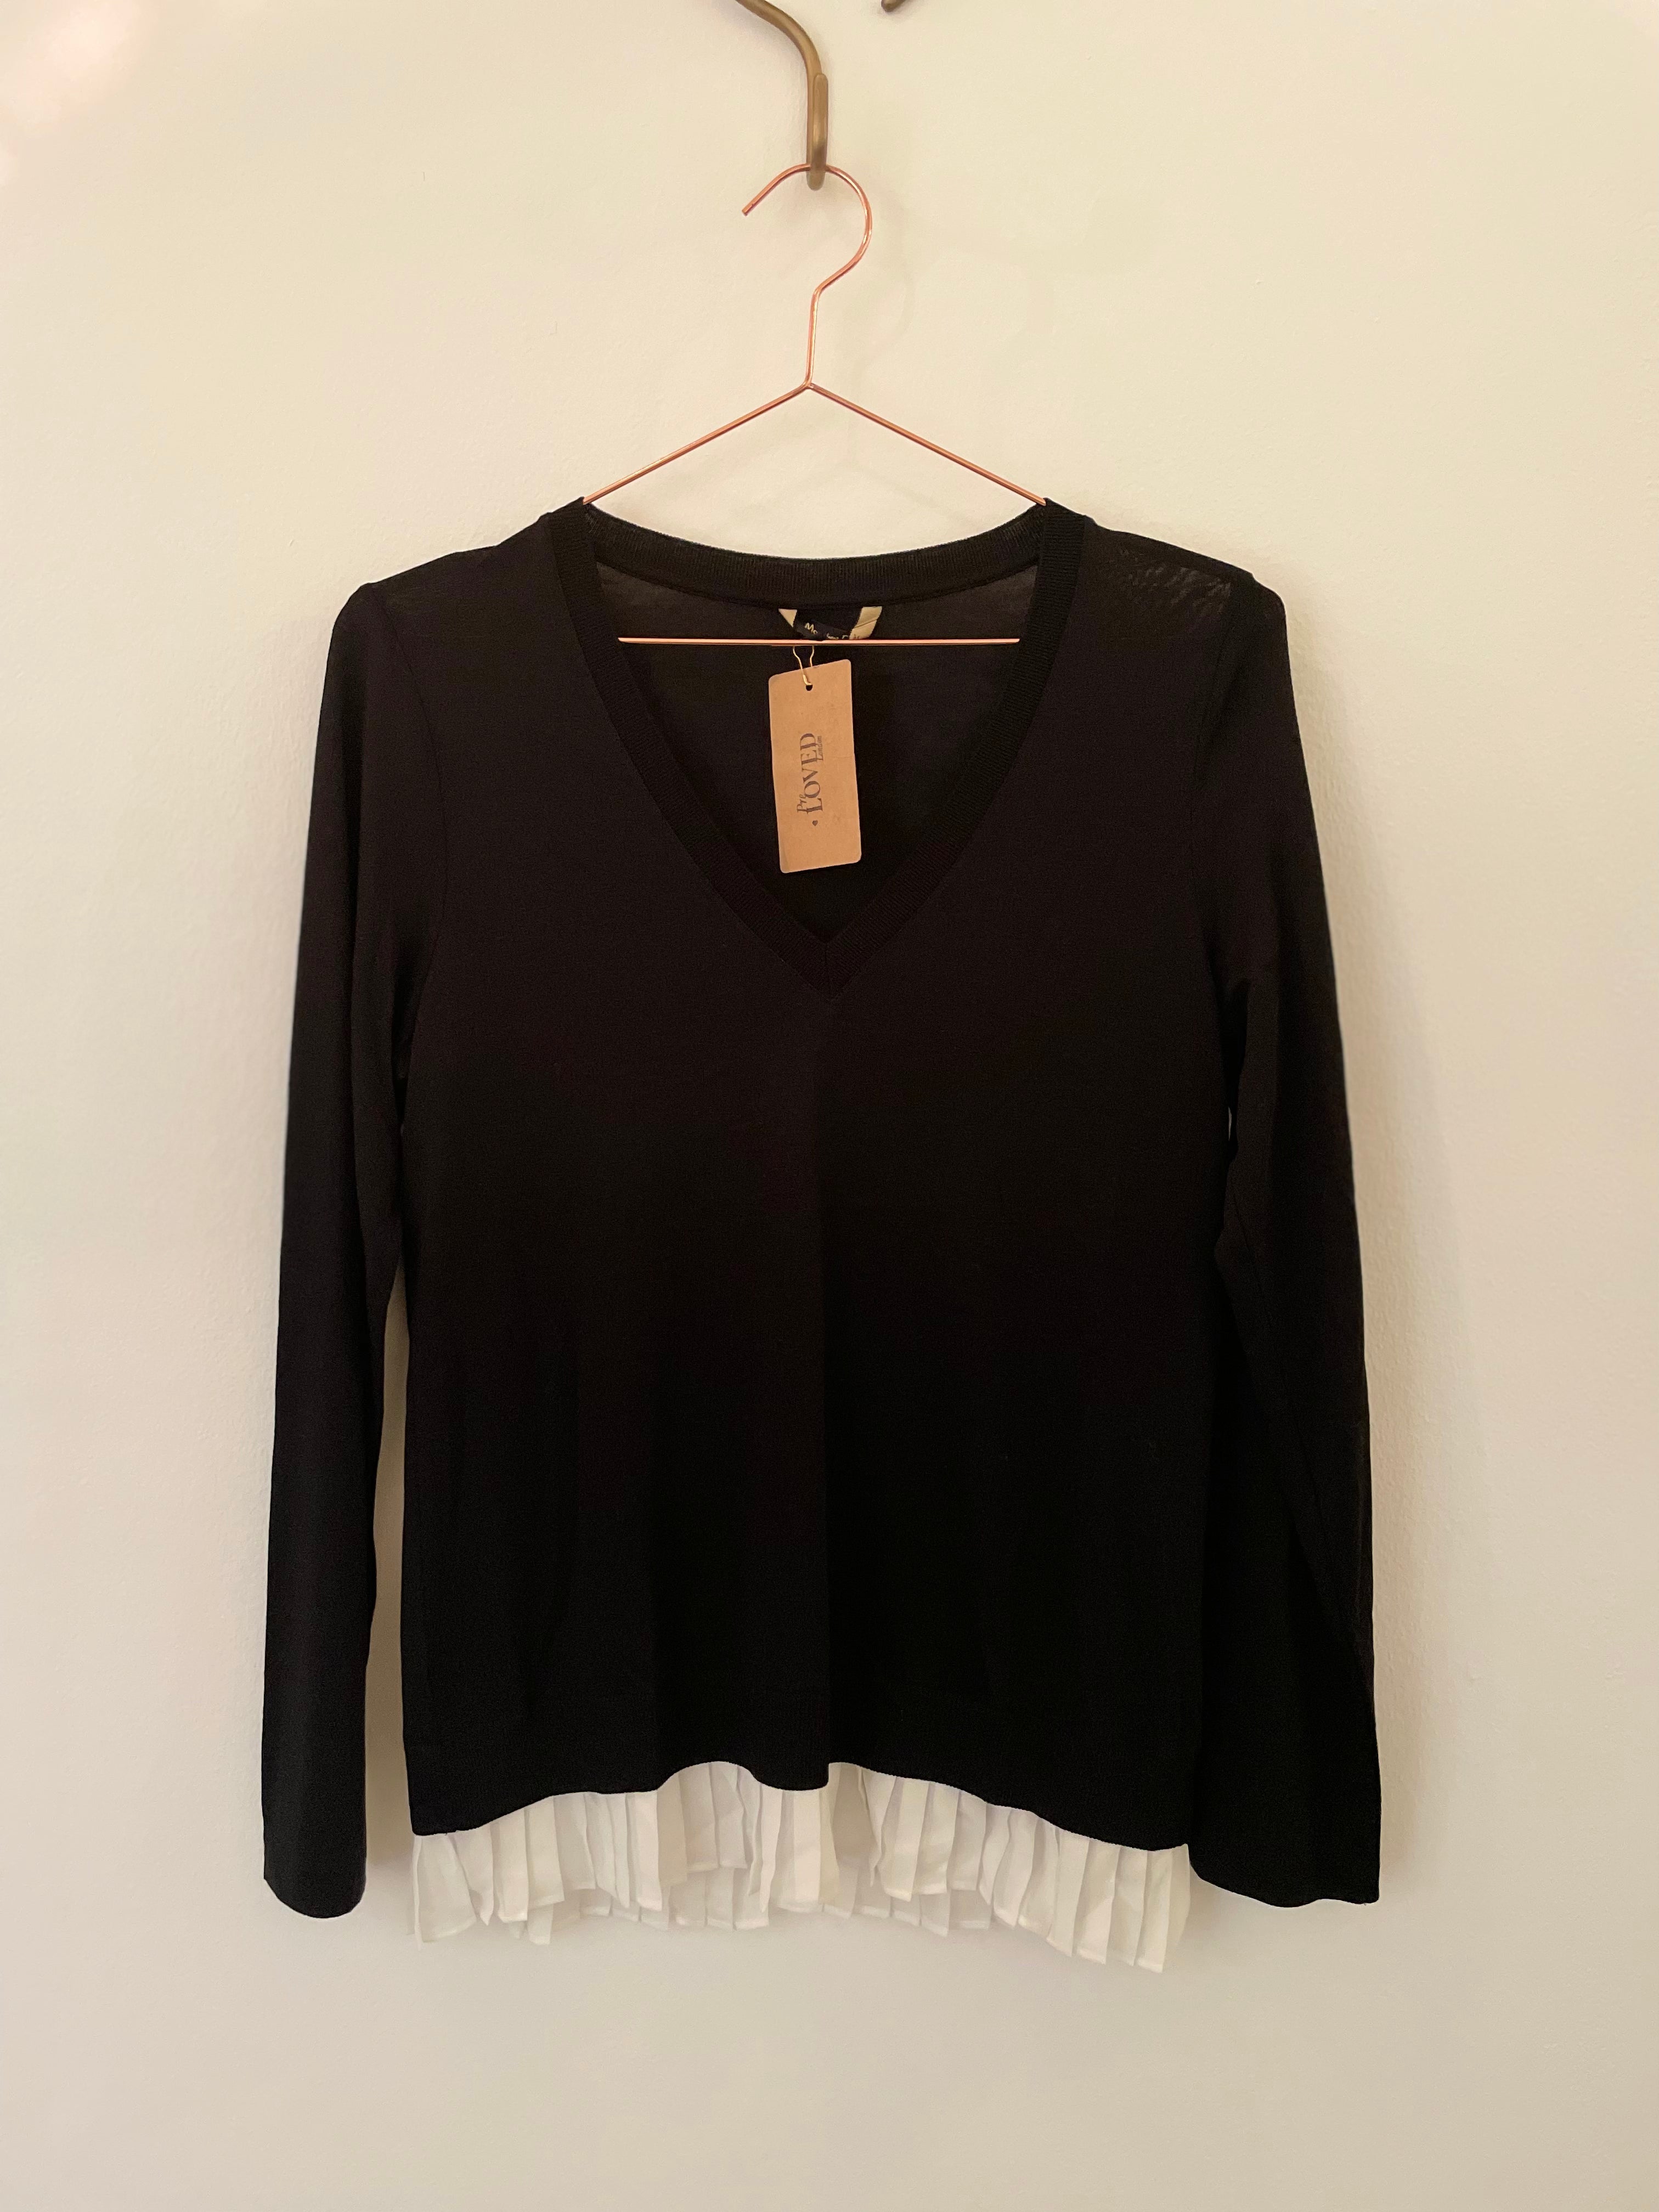 Black & white knit jumper - MASSIMO DUTTI - XS